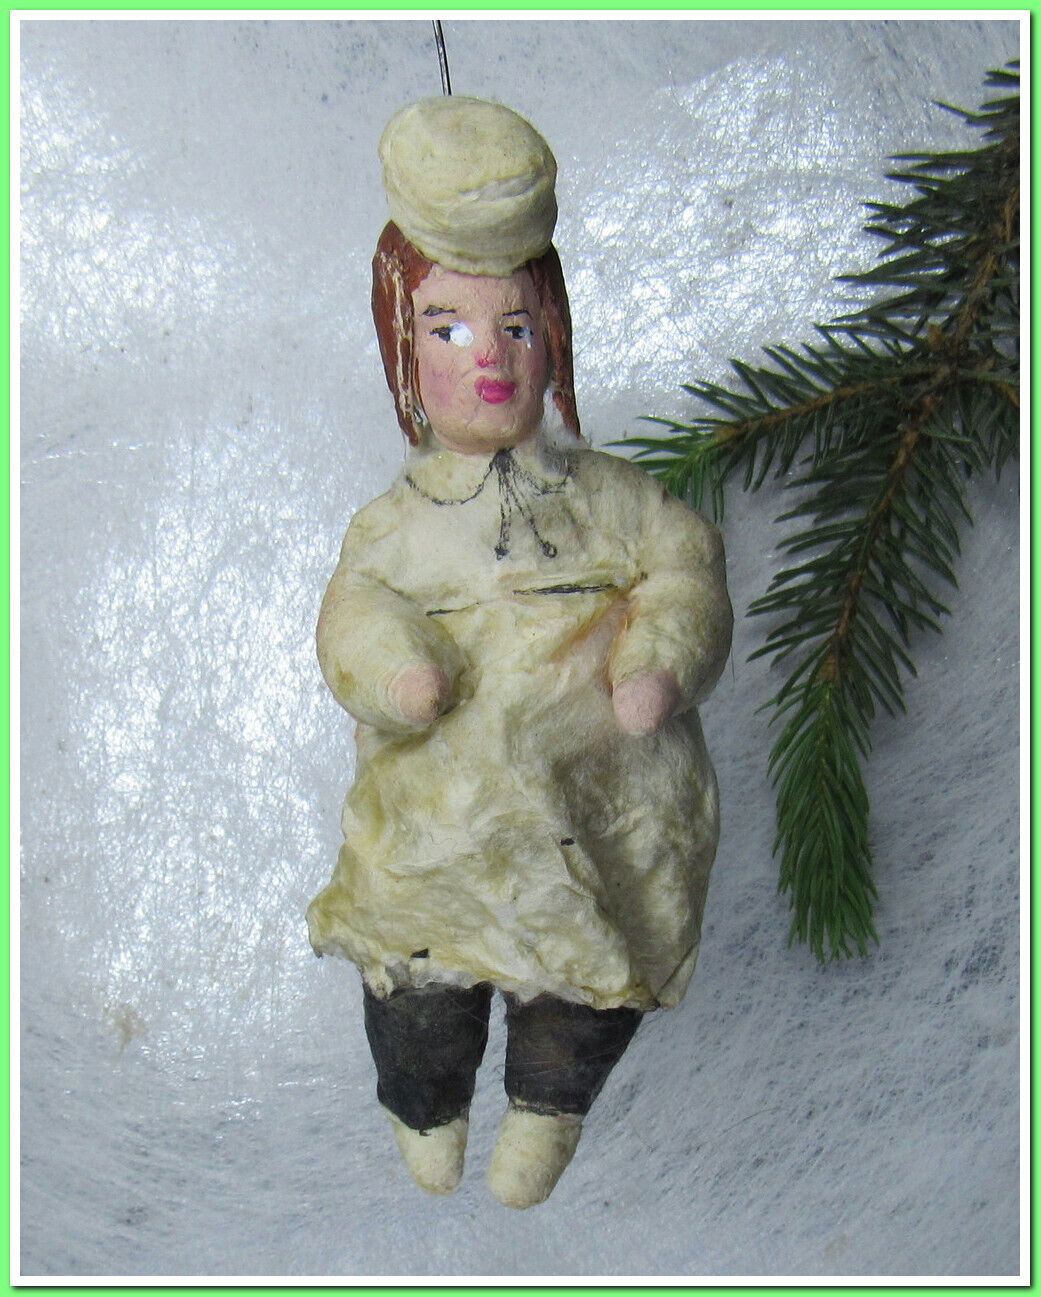 🎄Vintage antique Christmas spun cotton ornament figure #15524